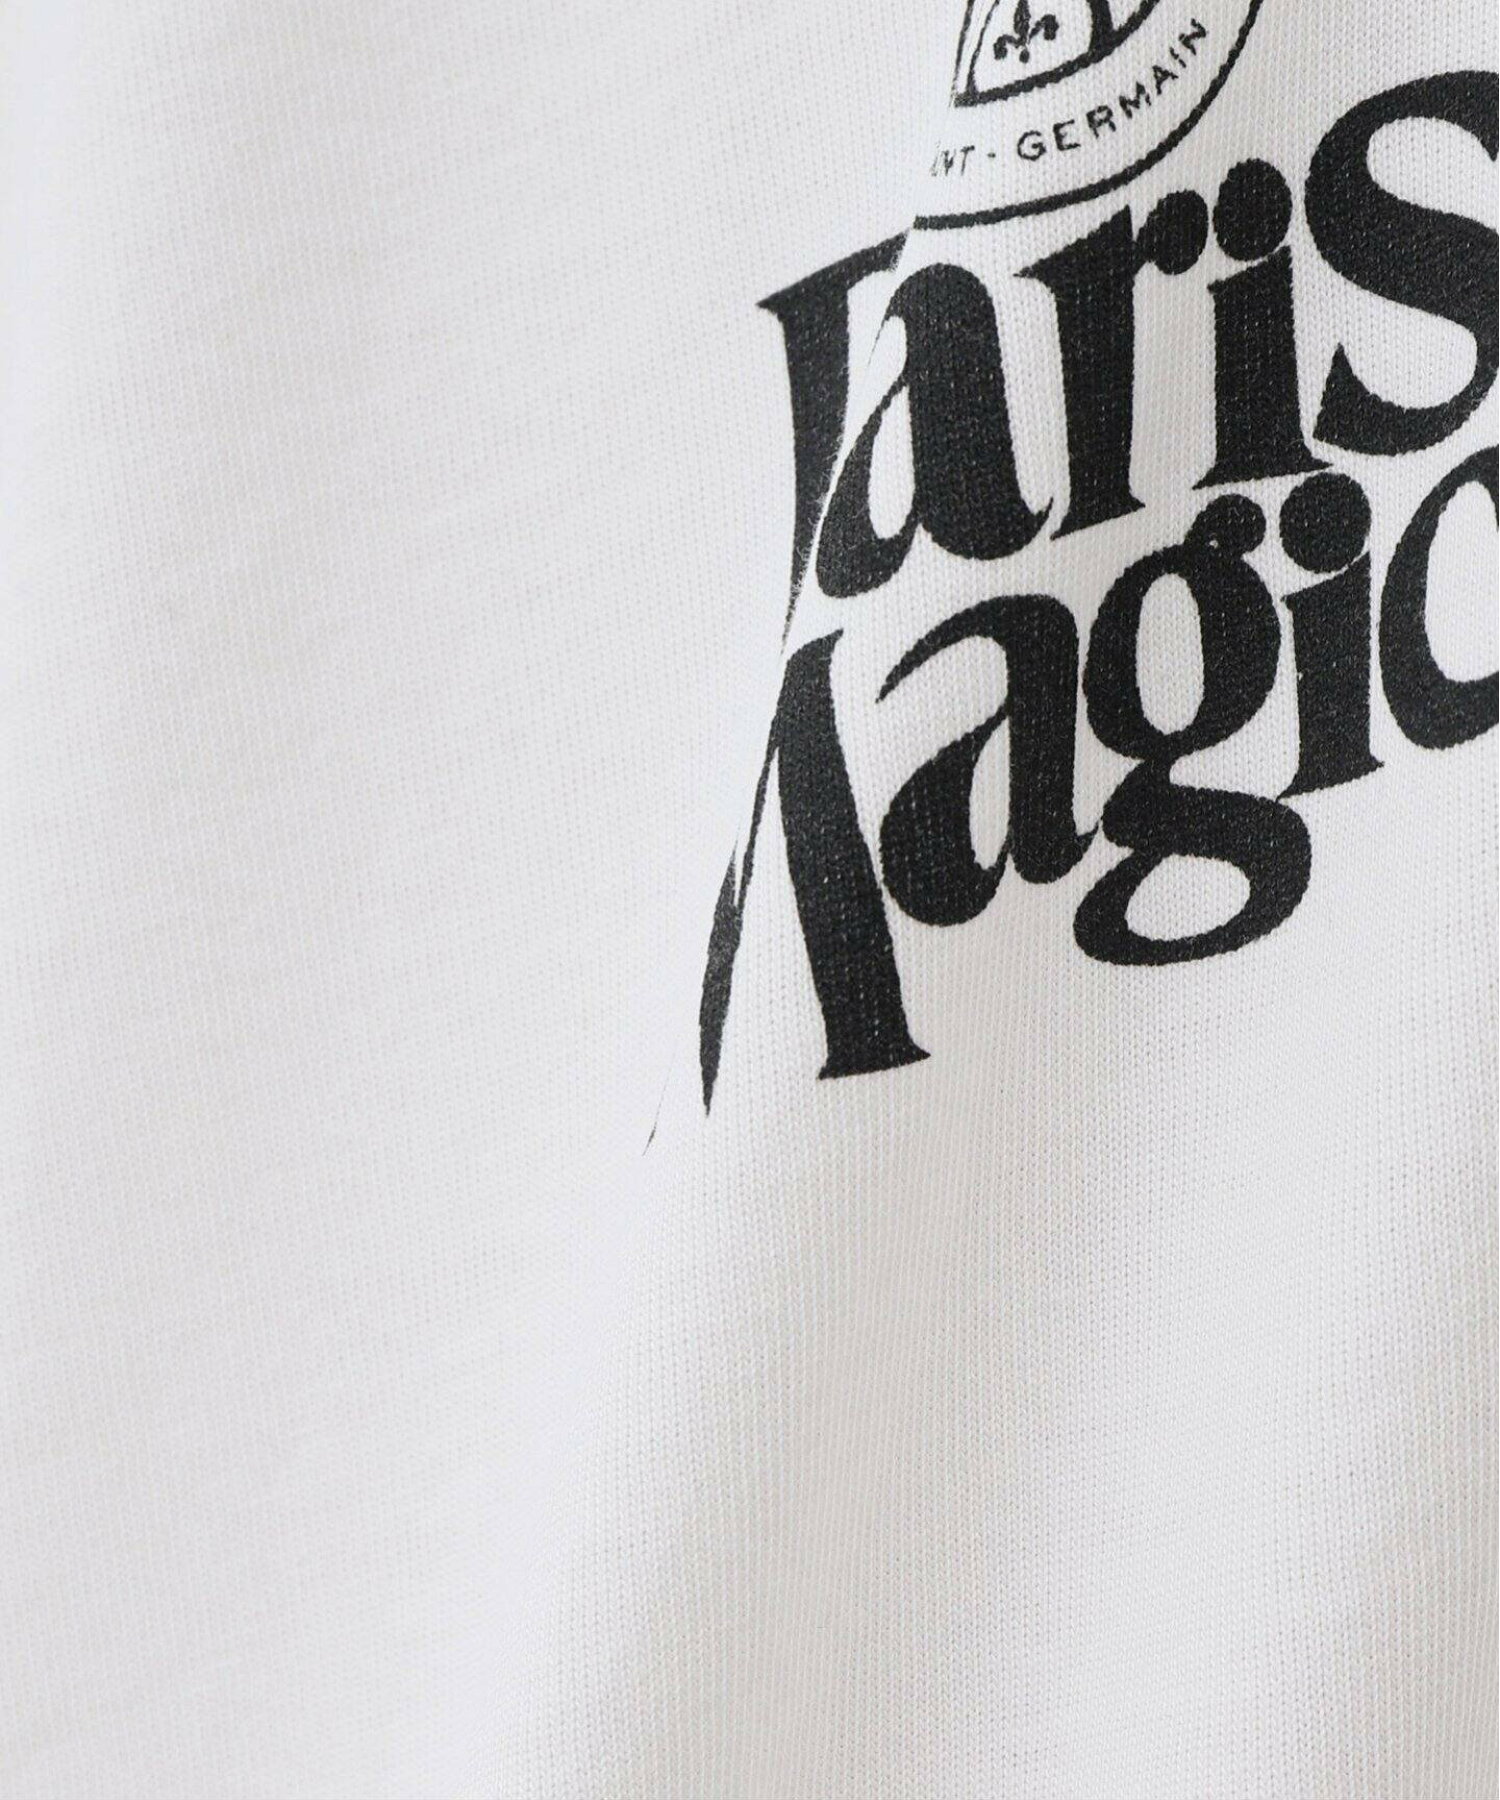 【Paris Saint-Germain】PARIS MAGIC プリント ロングスリーブTシャツ